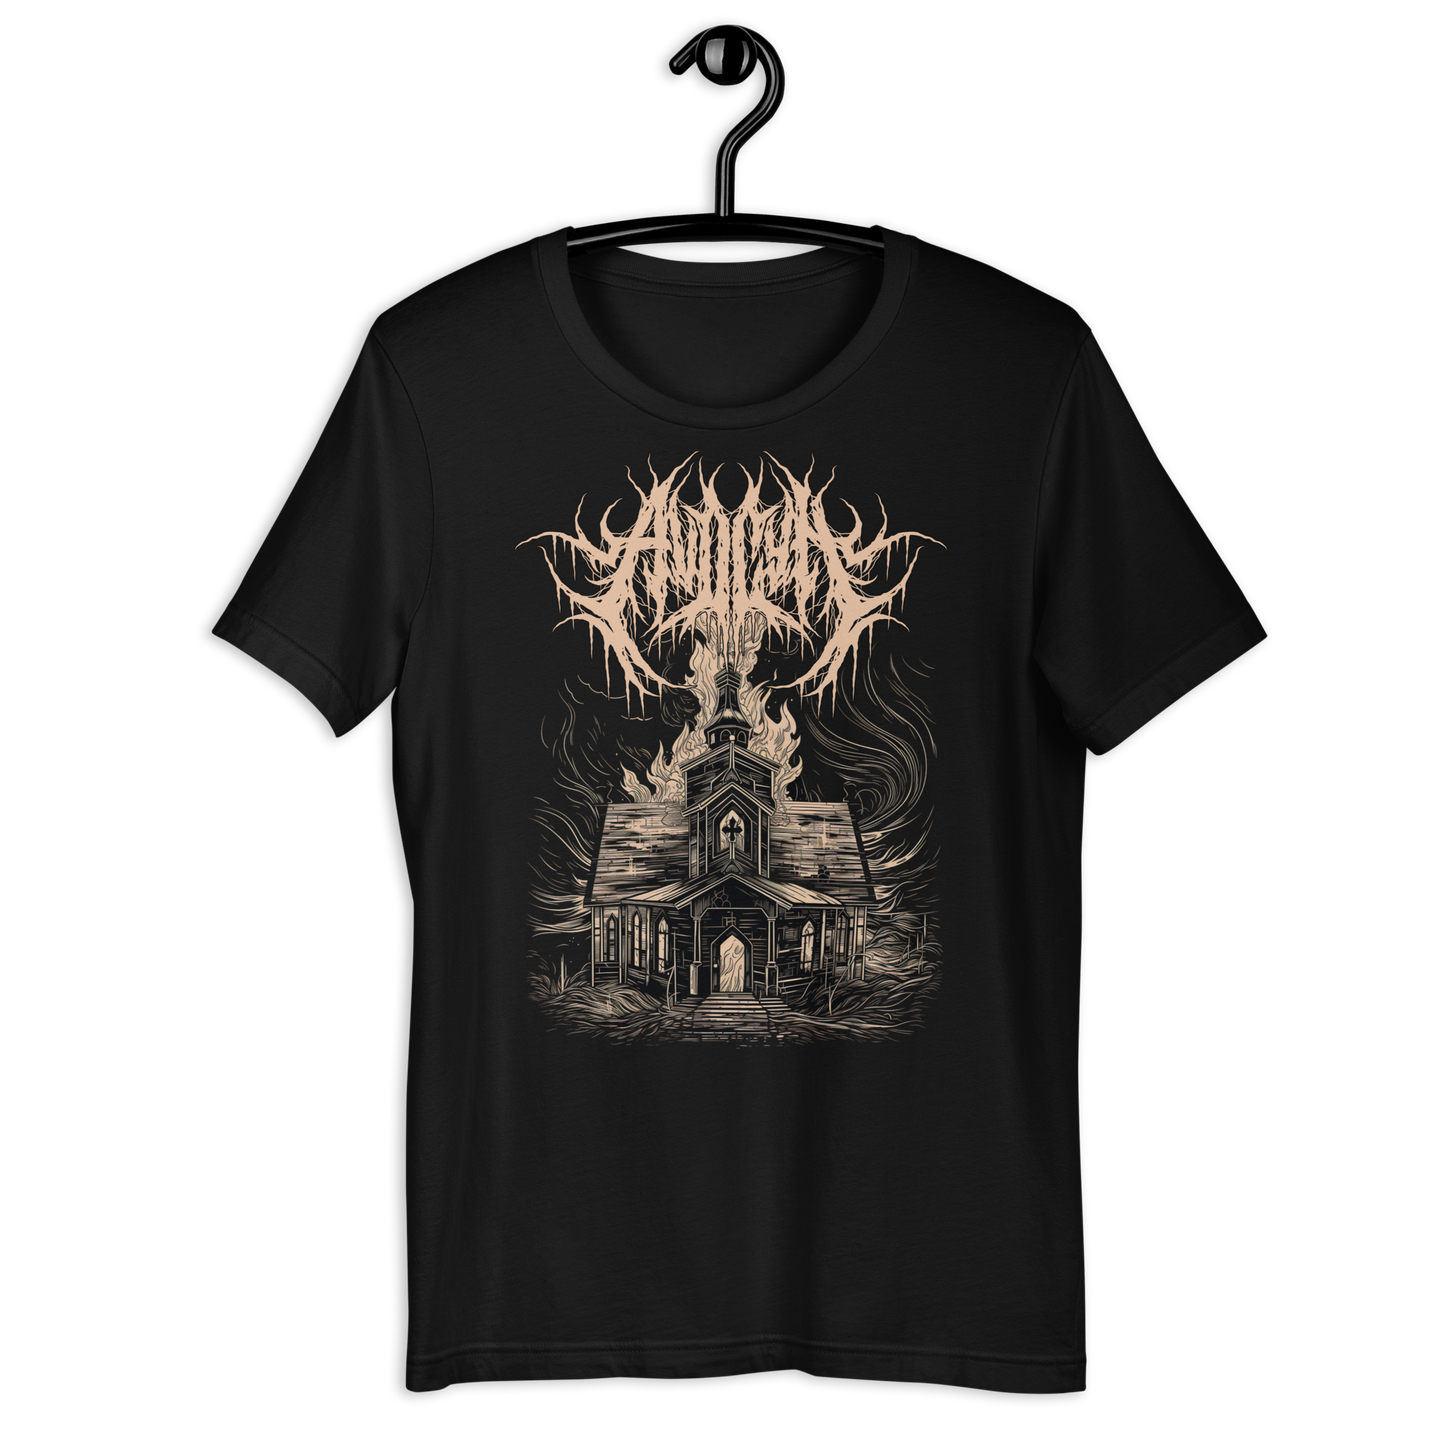 Avocyn "Burning Church" - Unisex t-shirt